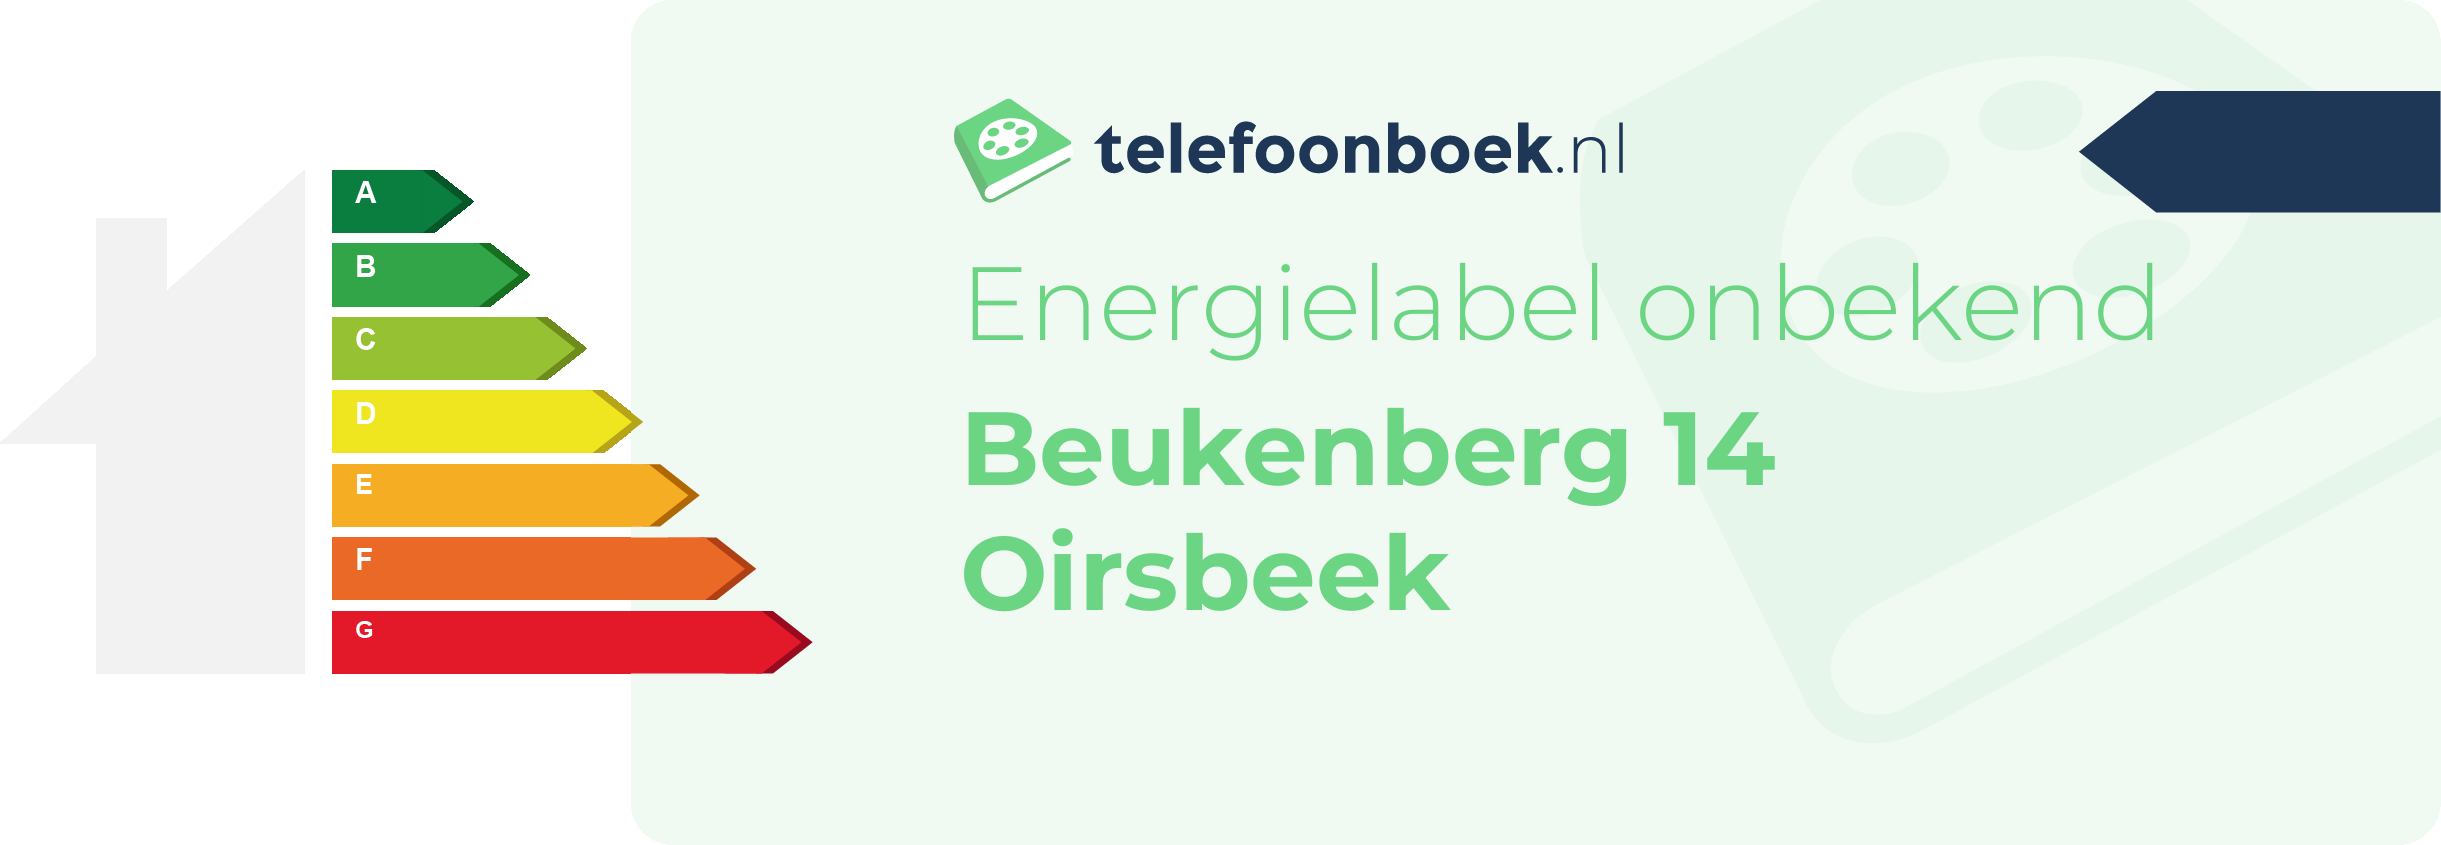 Energielabel Beukenberg 14 Oirsbeek